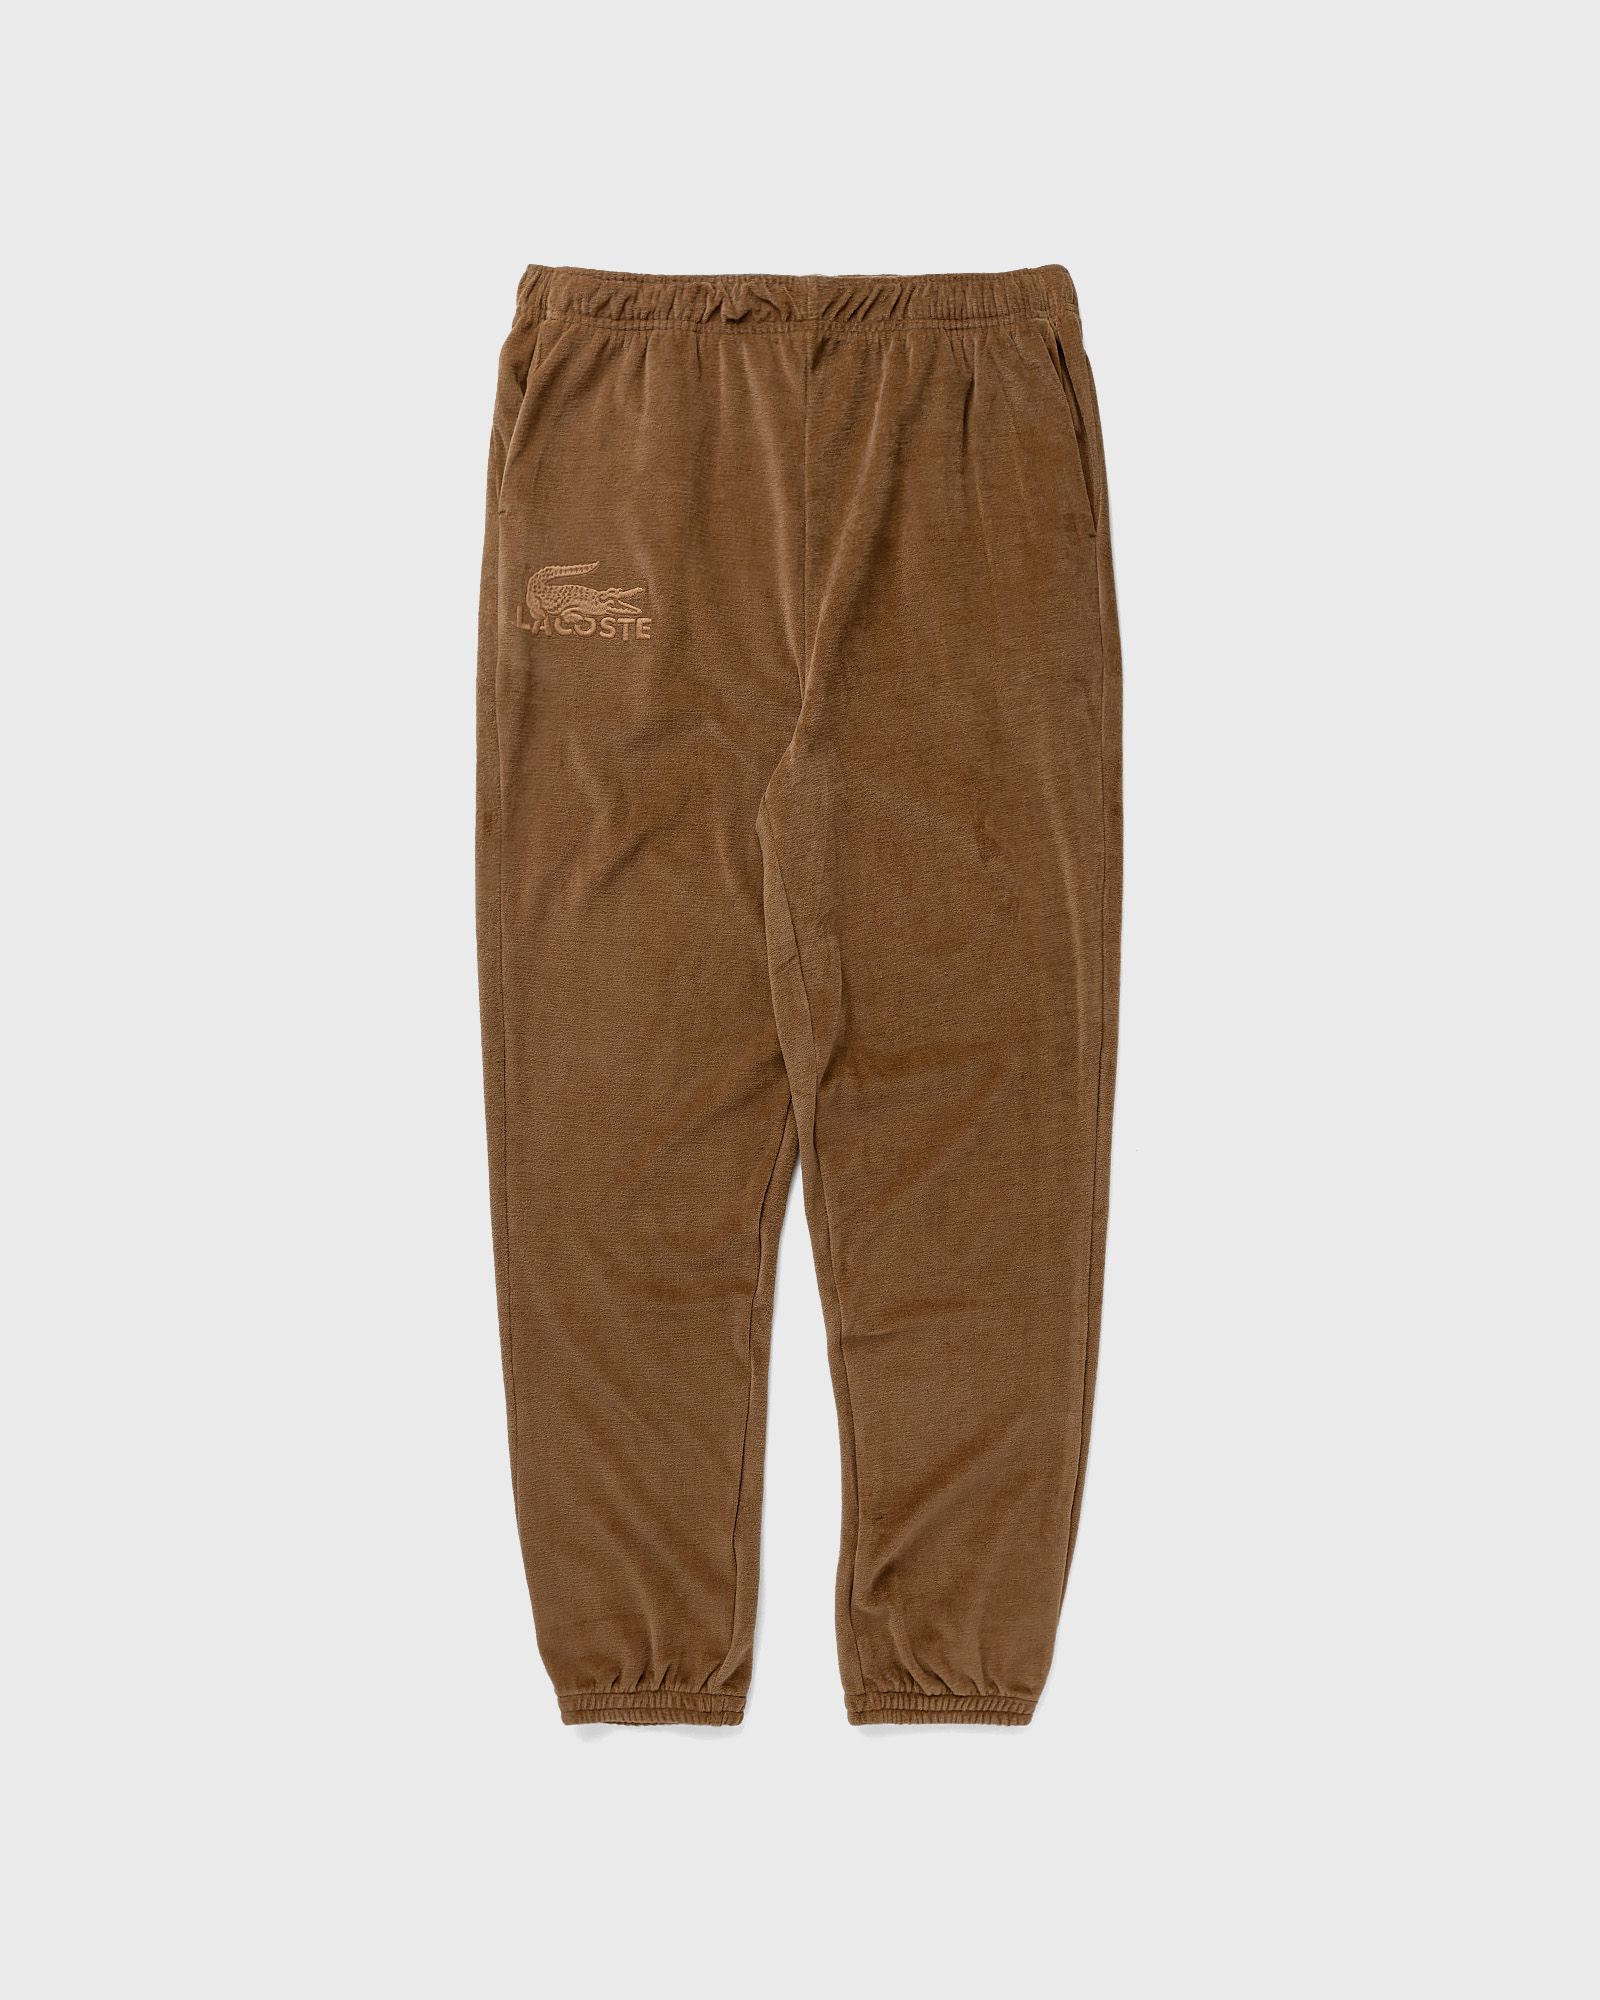 Lacoste - loungewear pyjama pants men sleep- & loungewear brown in größe:l